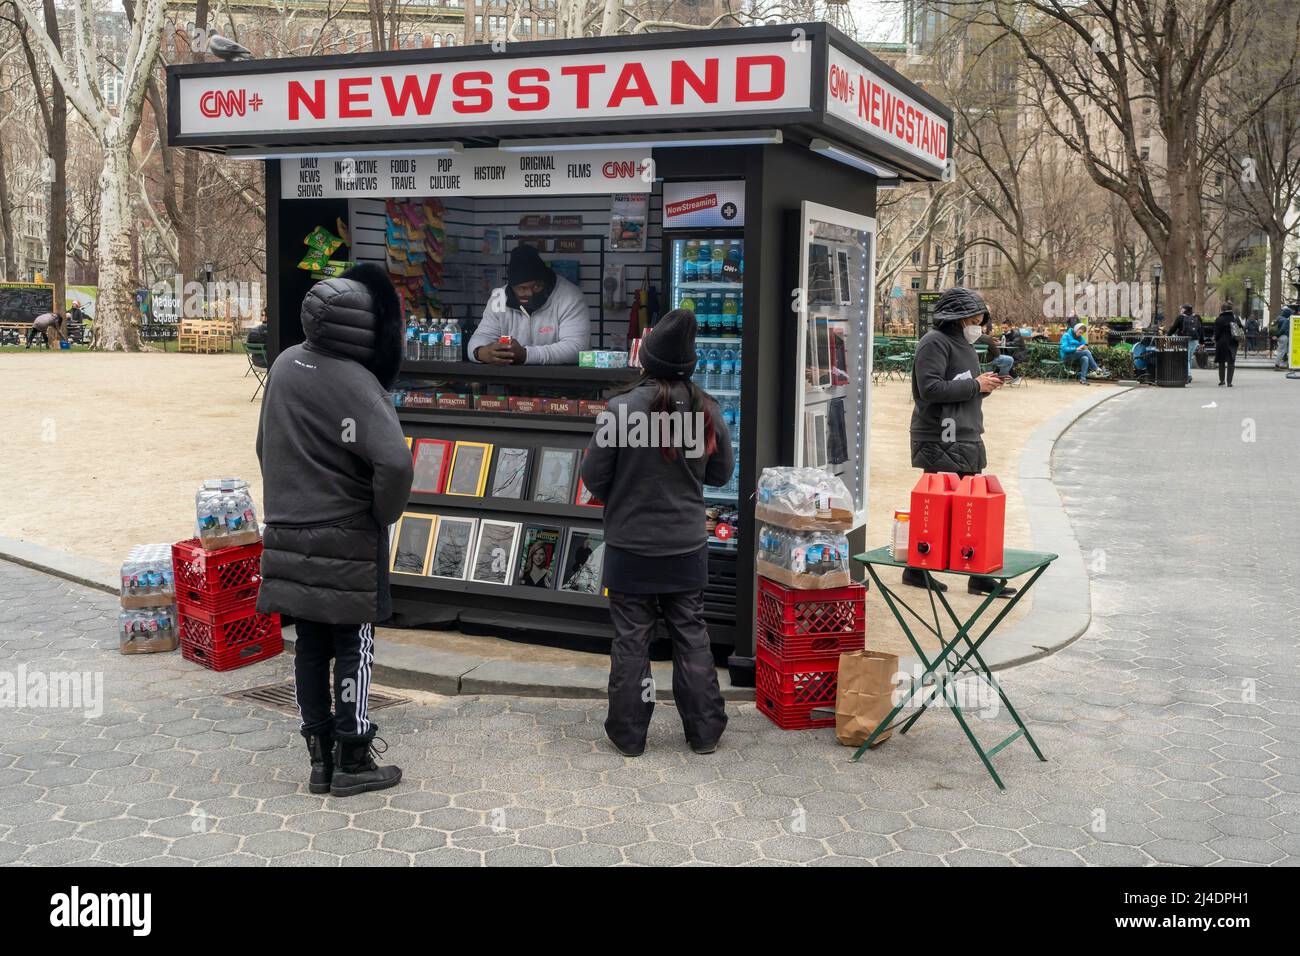 Markenaktivierung für den Streaming-Dienst CNN+ im Madison Square Park in New York am Mittwoch, den 30. März 2022. Der Video-Streaming-Dienst wurde im März 29 eingeführt. (© Richard B. Levine) Stockfoto